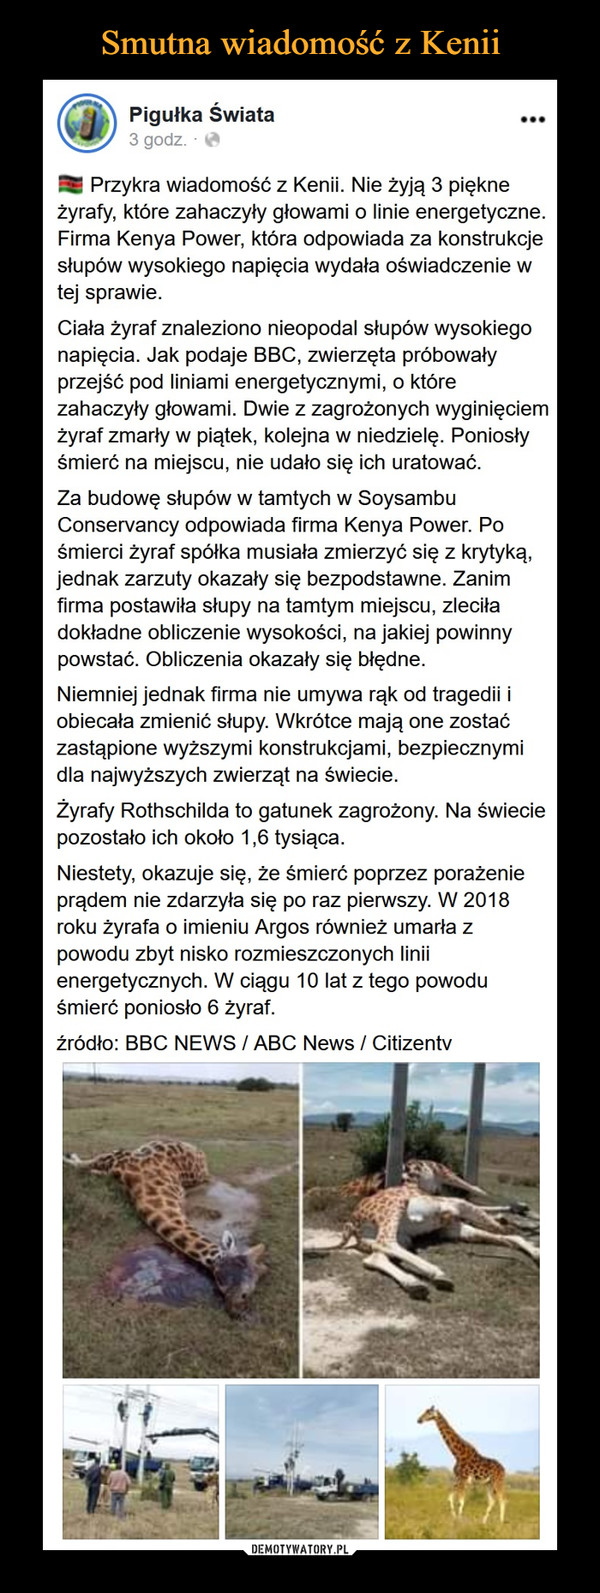  –  Smutna wiadomość z KeniiPigułka Świata3 godz. O...Przykra wiadomość z Kenii. Nie żyją 3 piękneżyrafy, które zahaczyły głowami o linie energetyczne.Firma Kenya Power, która odpowiada za konstrukcjesłupów wysokiego napięcia wydała oświadczenie wtej sprawie.Ciała żyraf znaleziono nieopodal słupów wysokiegonapięcia. Jak podaje BBC, zwierzęta próbowałyprzejść pod liniami energetycznymi, o którezahaczyły głowami. Dwie z zagrożonych wyginięciemżyraf zmarły w piątek, kolejna w niedzielę. Poniosłyśmierć na miejscu, nie udało się ich uratowaćZa budowę słupów w tamtych w SoysambuConservancy odpowiada firma Kenya Power. Pośmierci żyraf spółka musiała zmierzyć się z krytyką,jednak zarzuty okazały się bezpodstawne. Zanimfirma postawiła słupy na tamtym miejscu, zleciładokładne obliczenie wysokości, na jakiej powinnypowstać. Obliczenia okazały się błędne.Niemniej jednak firma nie umywa rąk od tragedii iobiecała zmienić słupy. Wkrótce mają one zostaćzastąpione wyższymi konstrukcjami, bezpiecznymidla najwyższych zwierząt na świecie.Żyrafy Rothschilda to gatunek zagrożony. Na świeciepozostało ich około 1,6 tysiąca.Niestety, okazuje się, że śmierć poprzez porażenieprądem nie zdarzyła się po raz pierwszy. W 2018roku żyrafa o imieniu Argos również umarła zpowodu zbyt nisko rozmieszczonych liniienergetycznych. W ciągu 10 lat z tego powoduśmierć poniosło 6 żyraf.źródło: BBC NEWS / ABC News / CitizentvDEMOTYWATORY.PL